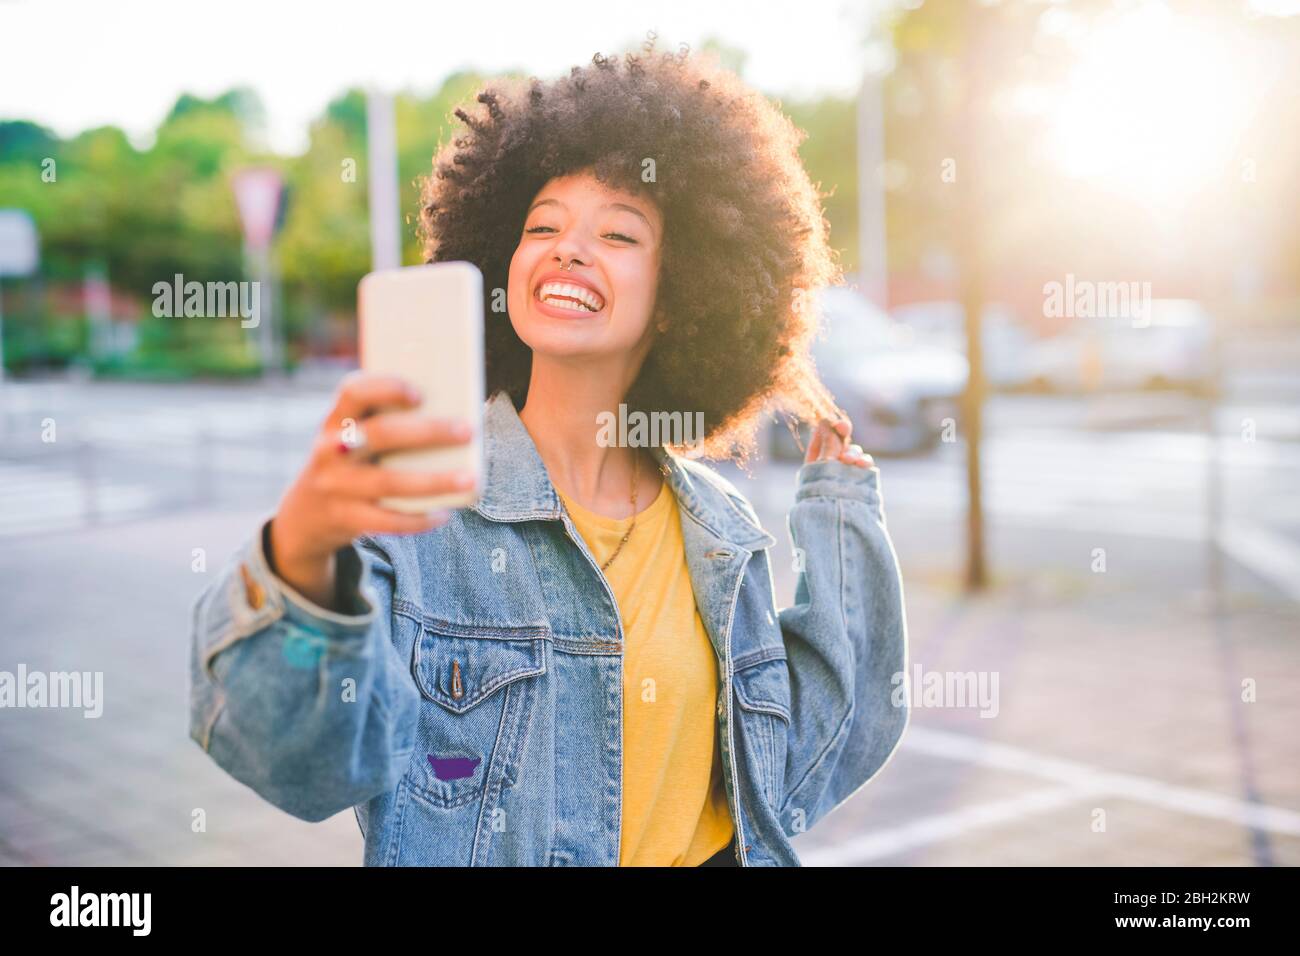 Glückliche junge Frau mit Afro-Frisur, die ein Selfie in der Stadt macht Stockfoto